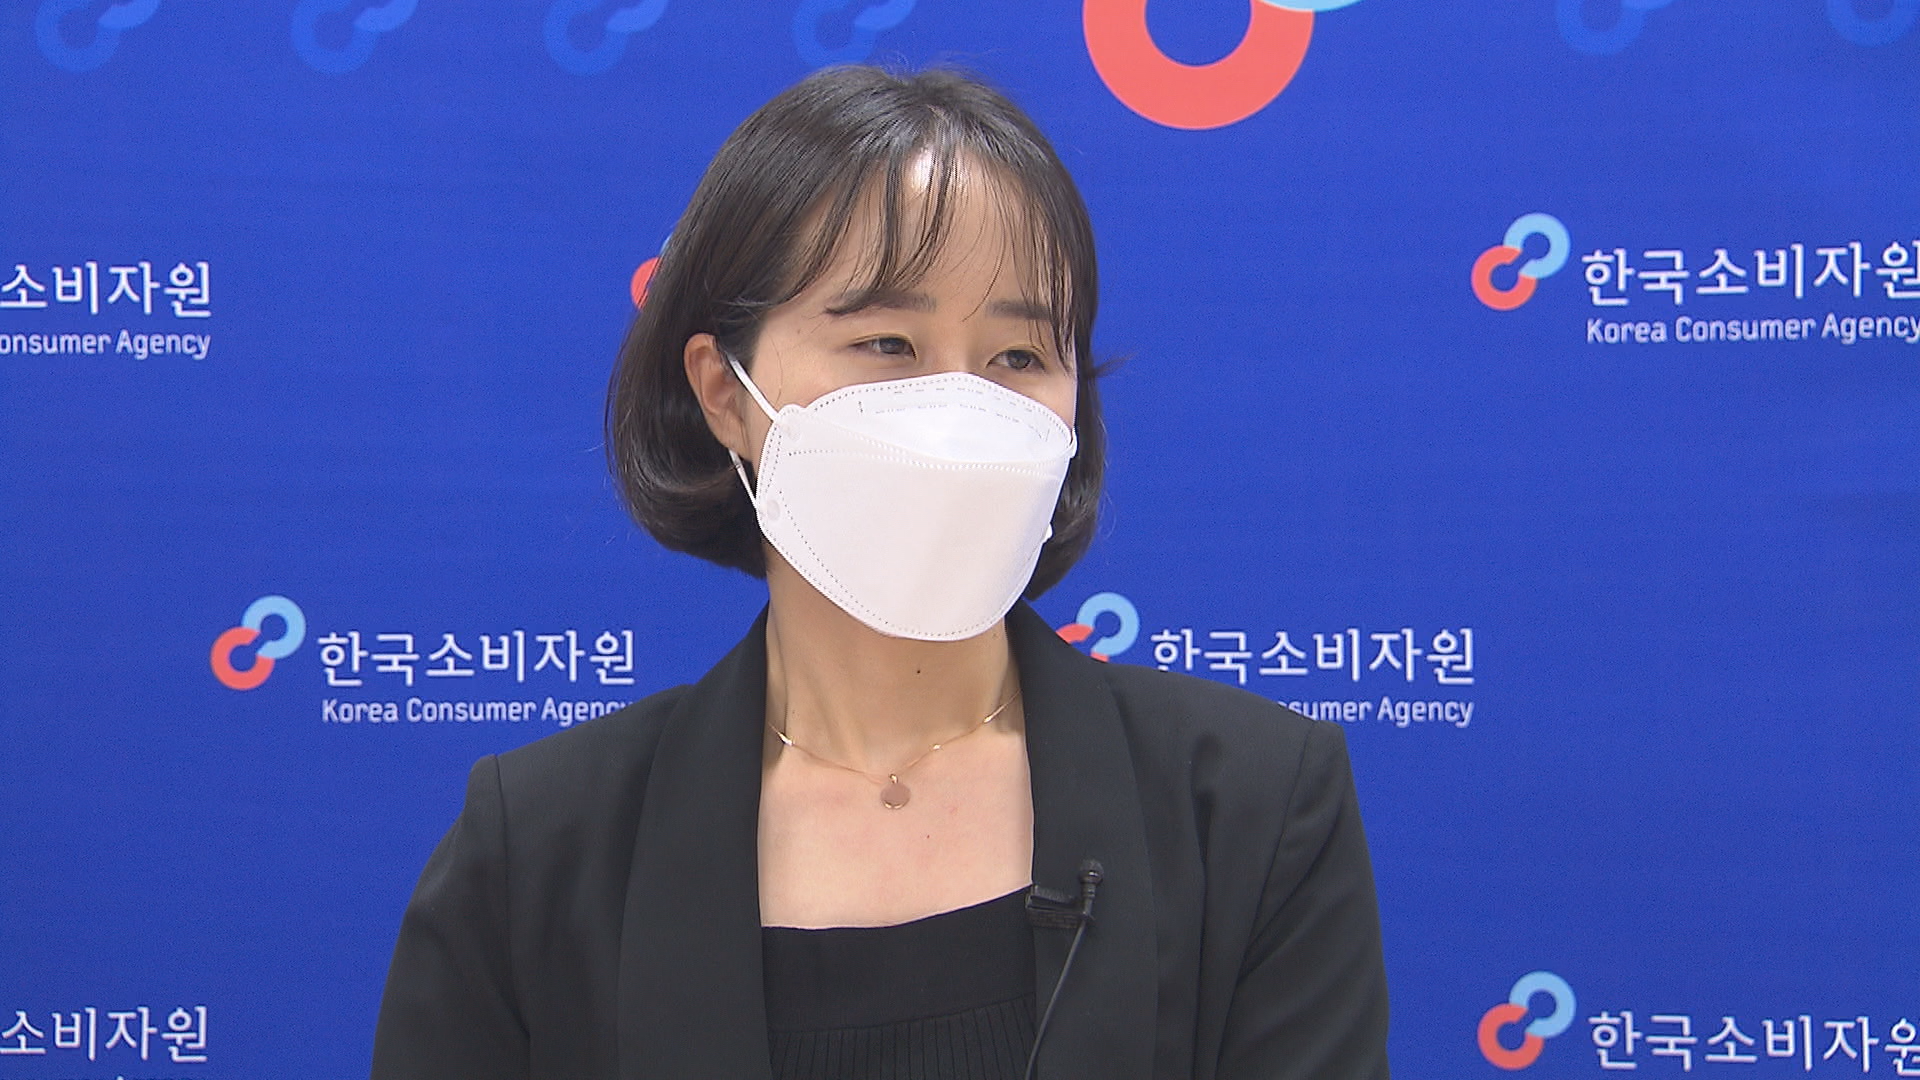 카셰어링 사고처리비 과다 청구 예방법을 설명하는 김해인 한국소비자원 피해구제국 대전지원 대리